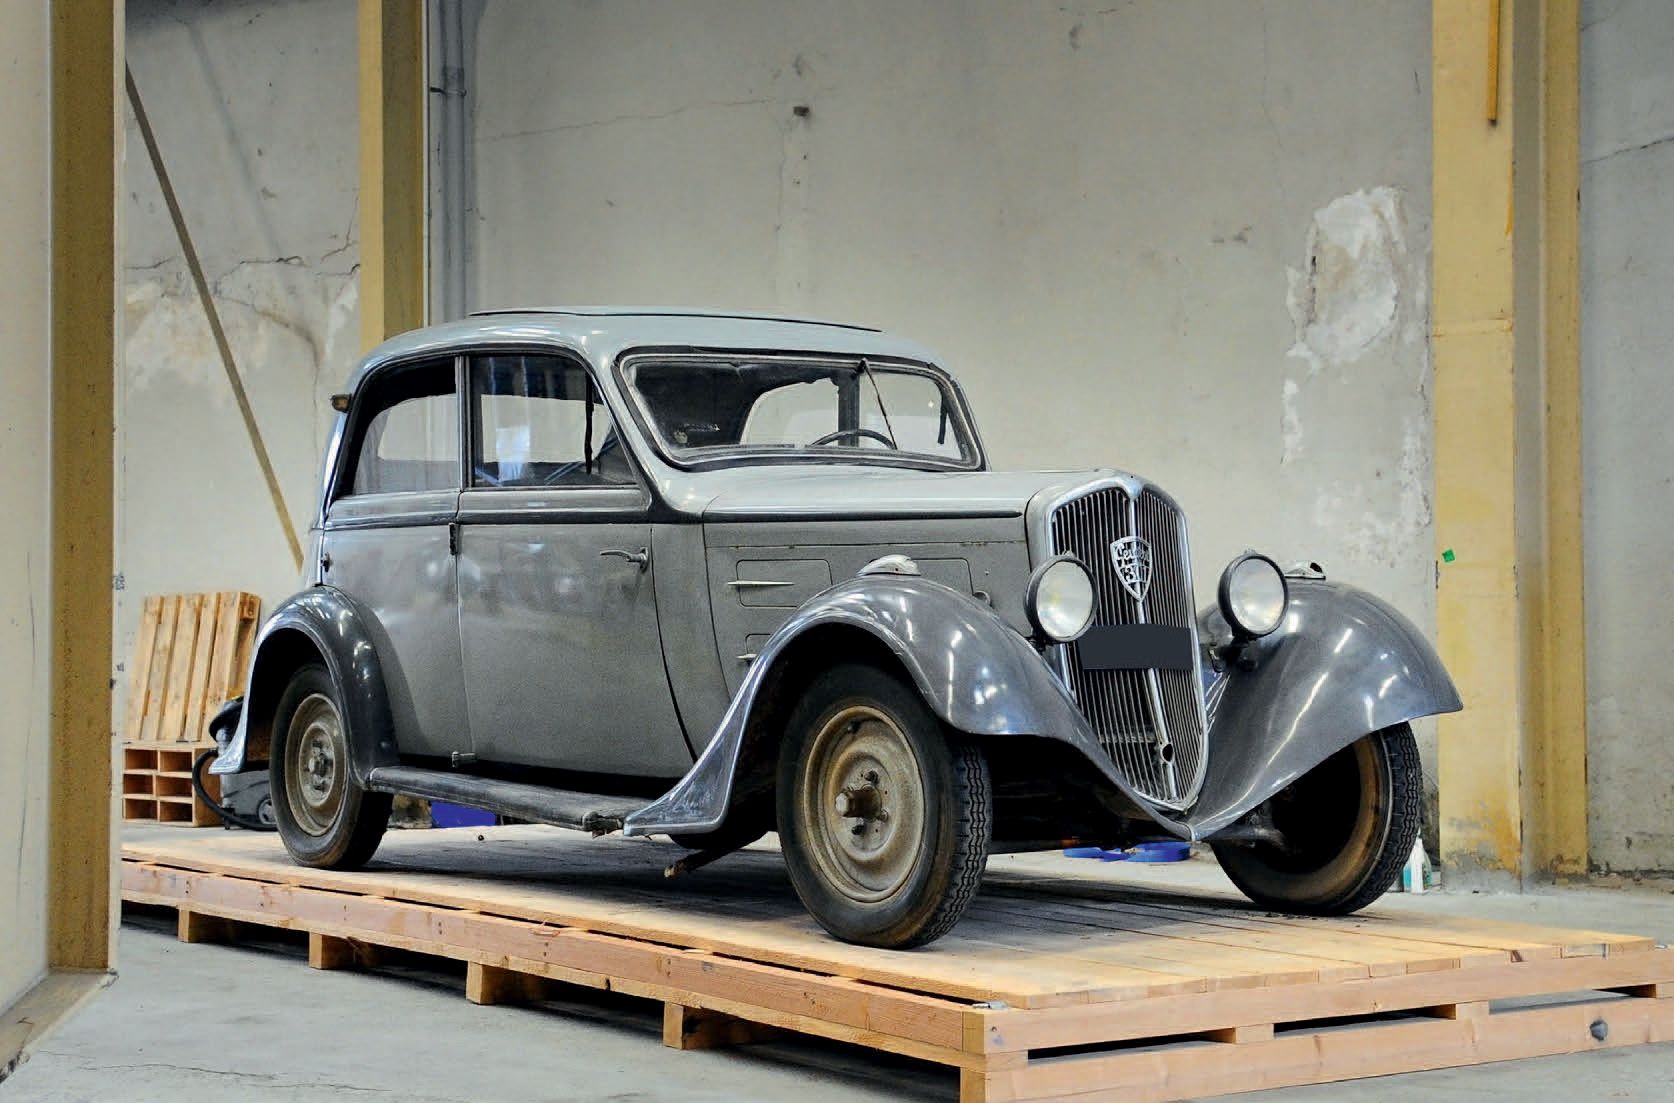 1934 Peugeot 301 Profilée 
非常罕见的剖面图版本

修复的良好基础

配有原厂天窗



法国注册

不含技术控制的销售

底盘编号：&hellip;